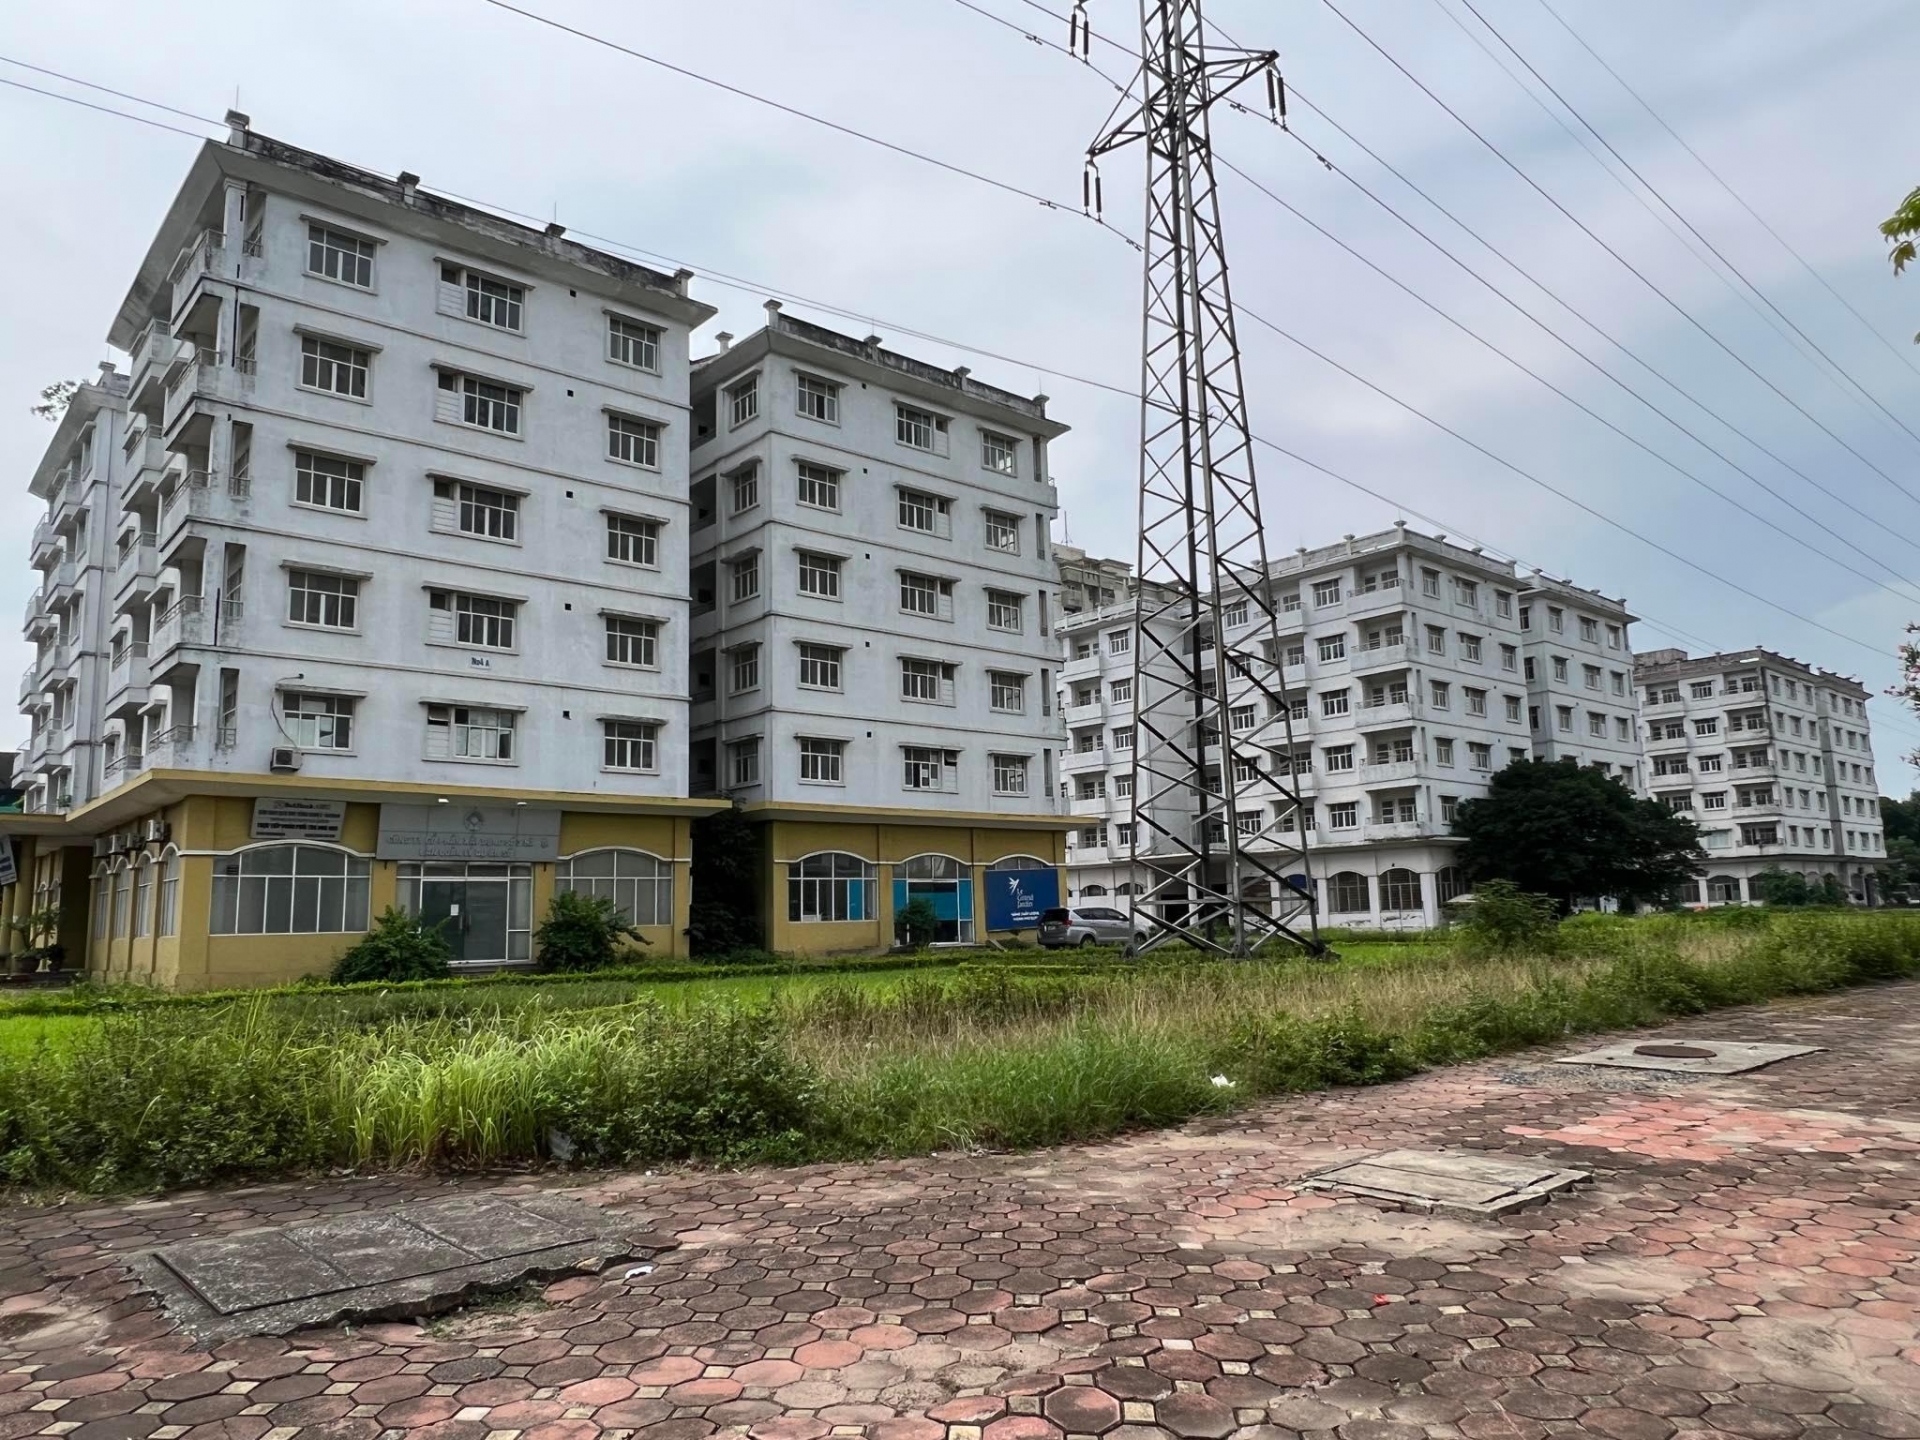 Hà Nội: Hàng nghìn căn hộ tái định cư bỏ hoang, hạ tầng xuống cấp nghiêm trọng